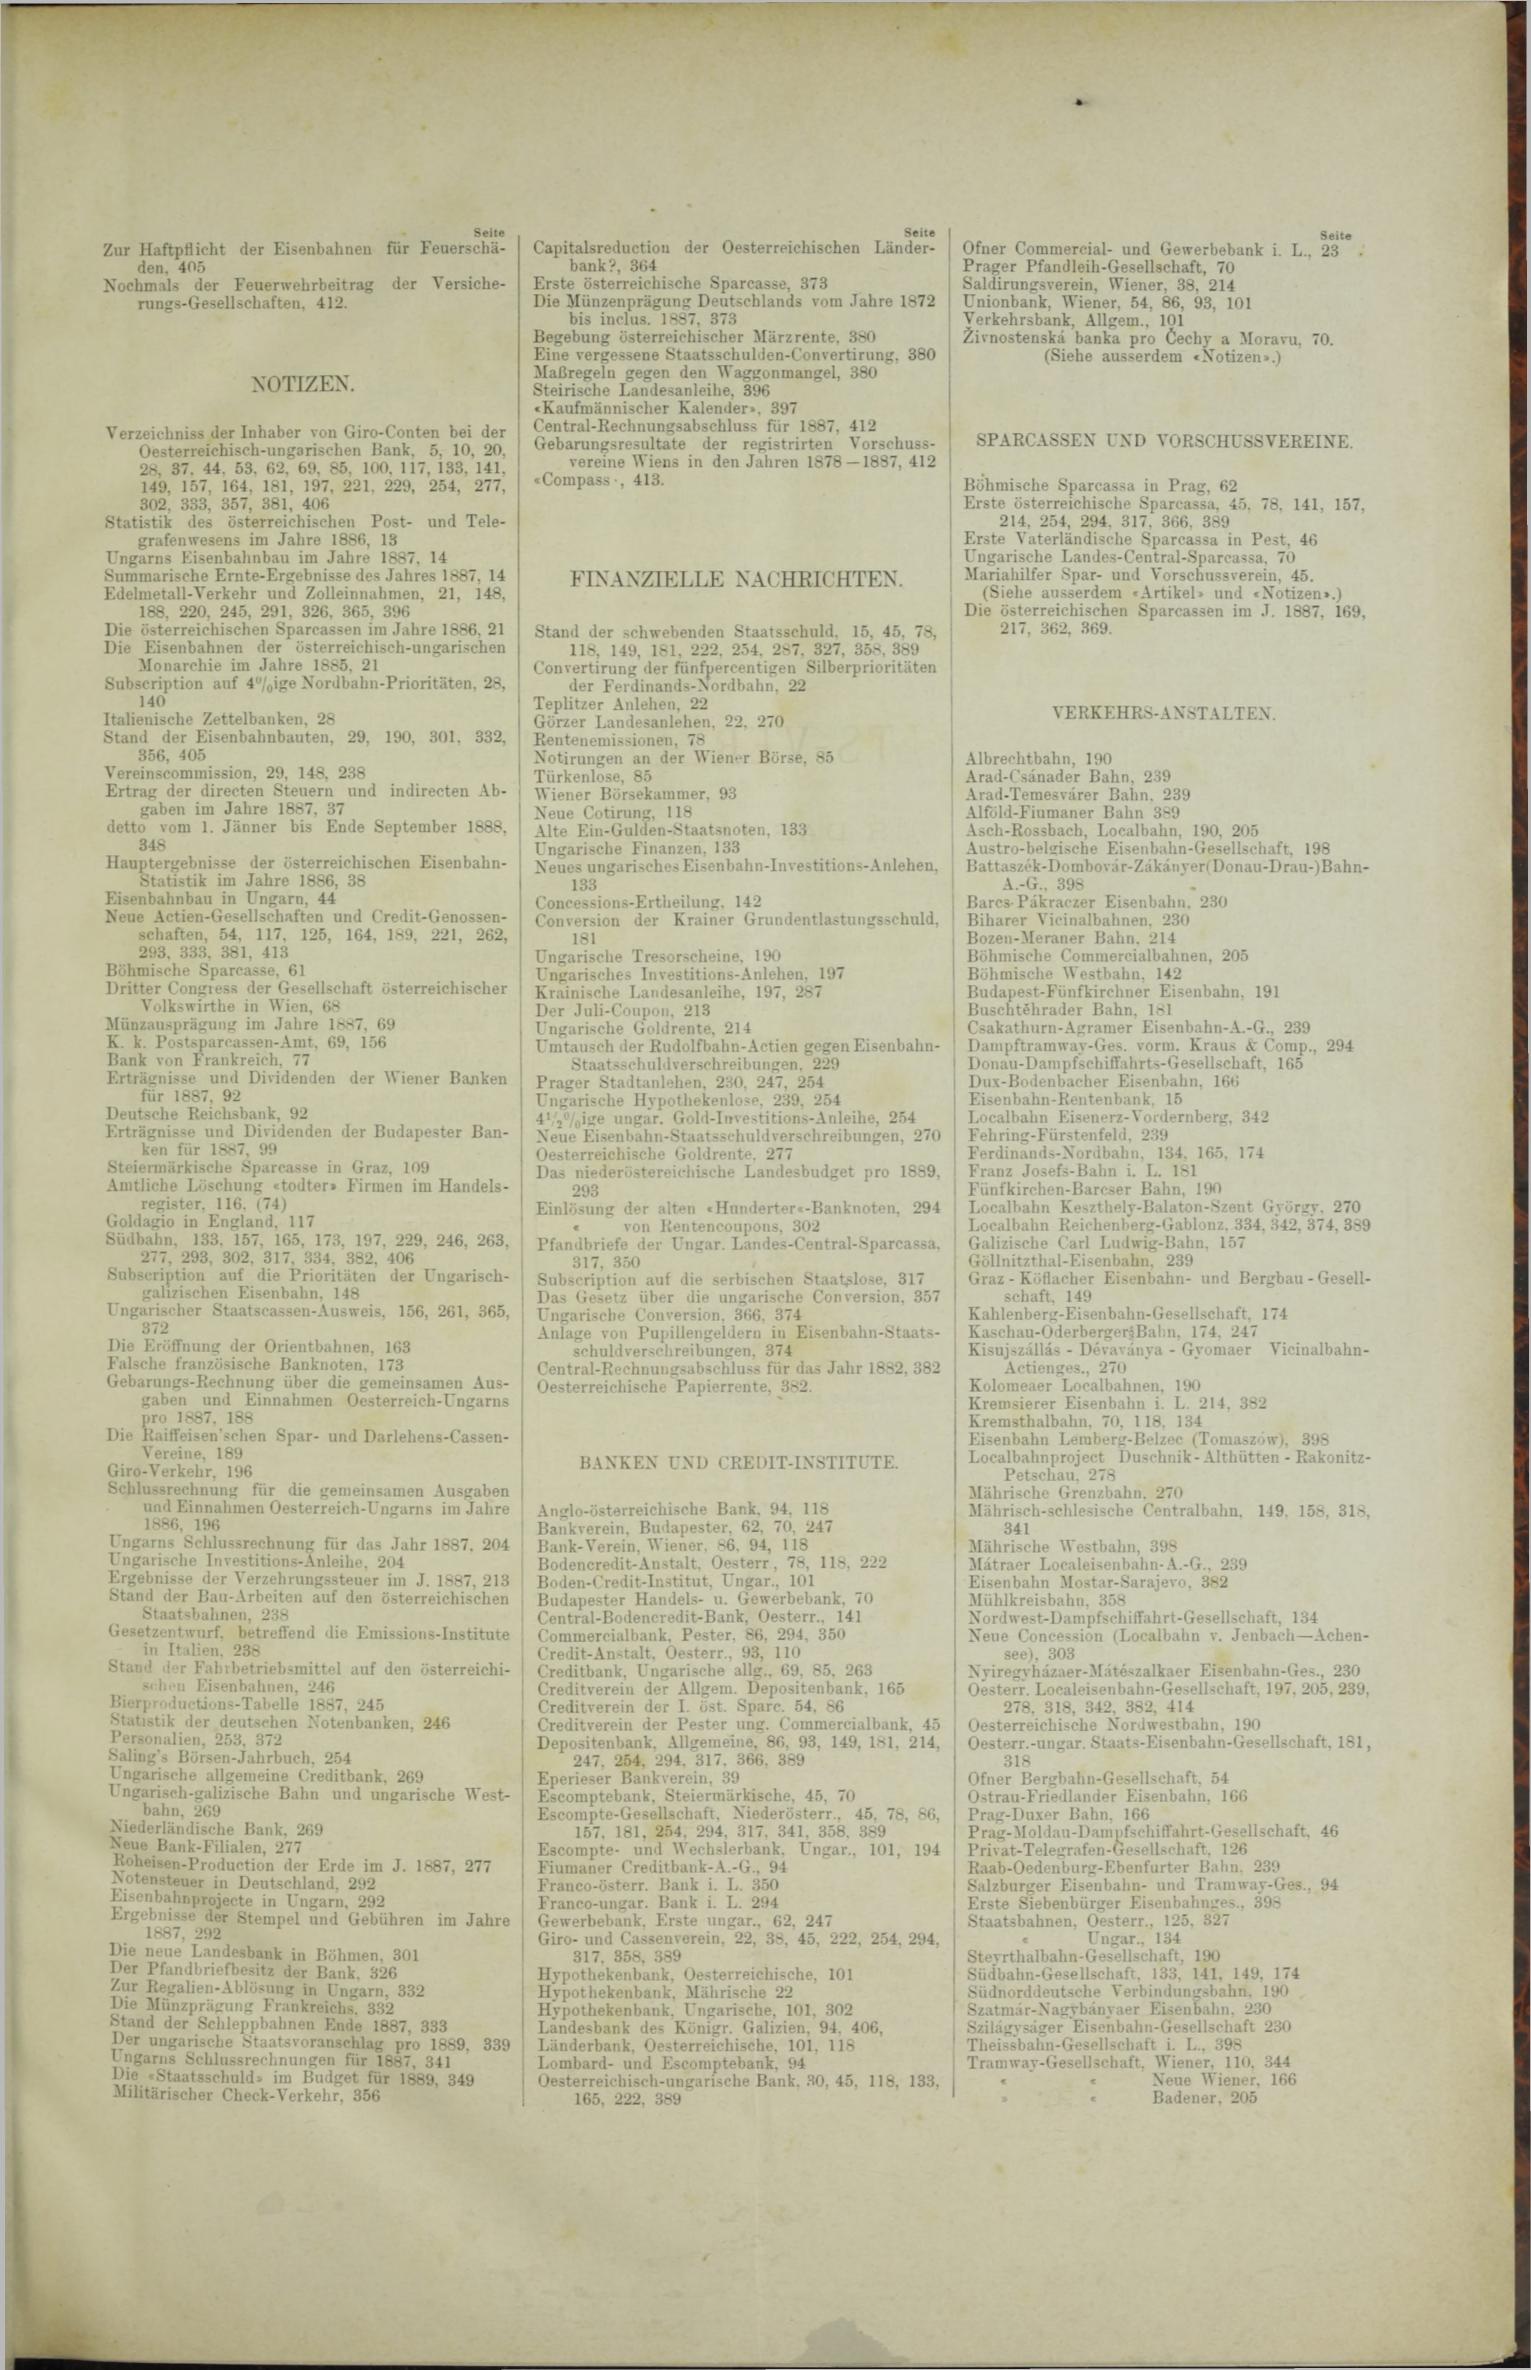 Der Tresor 17.05.1888 - Seite 11